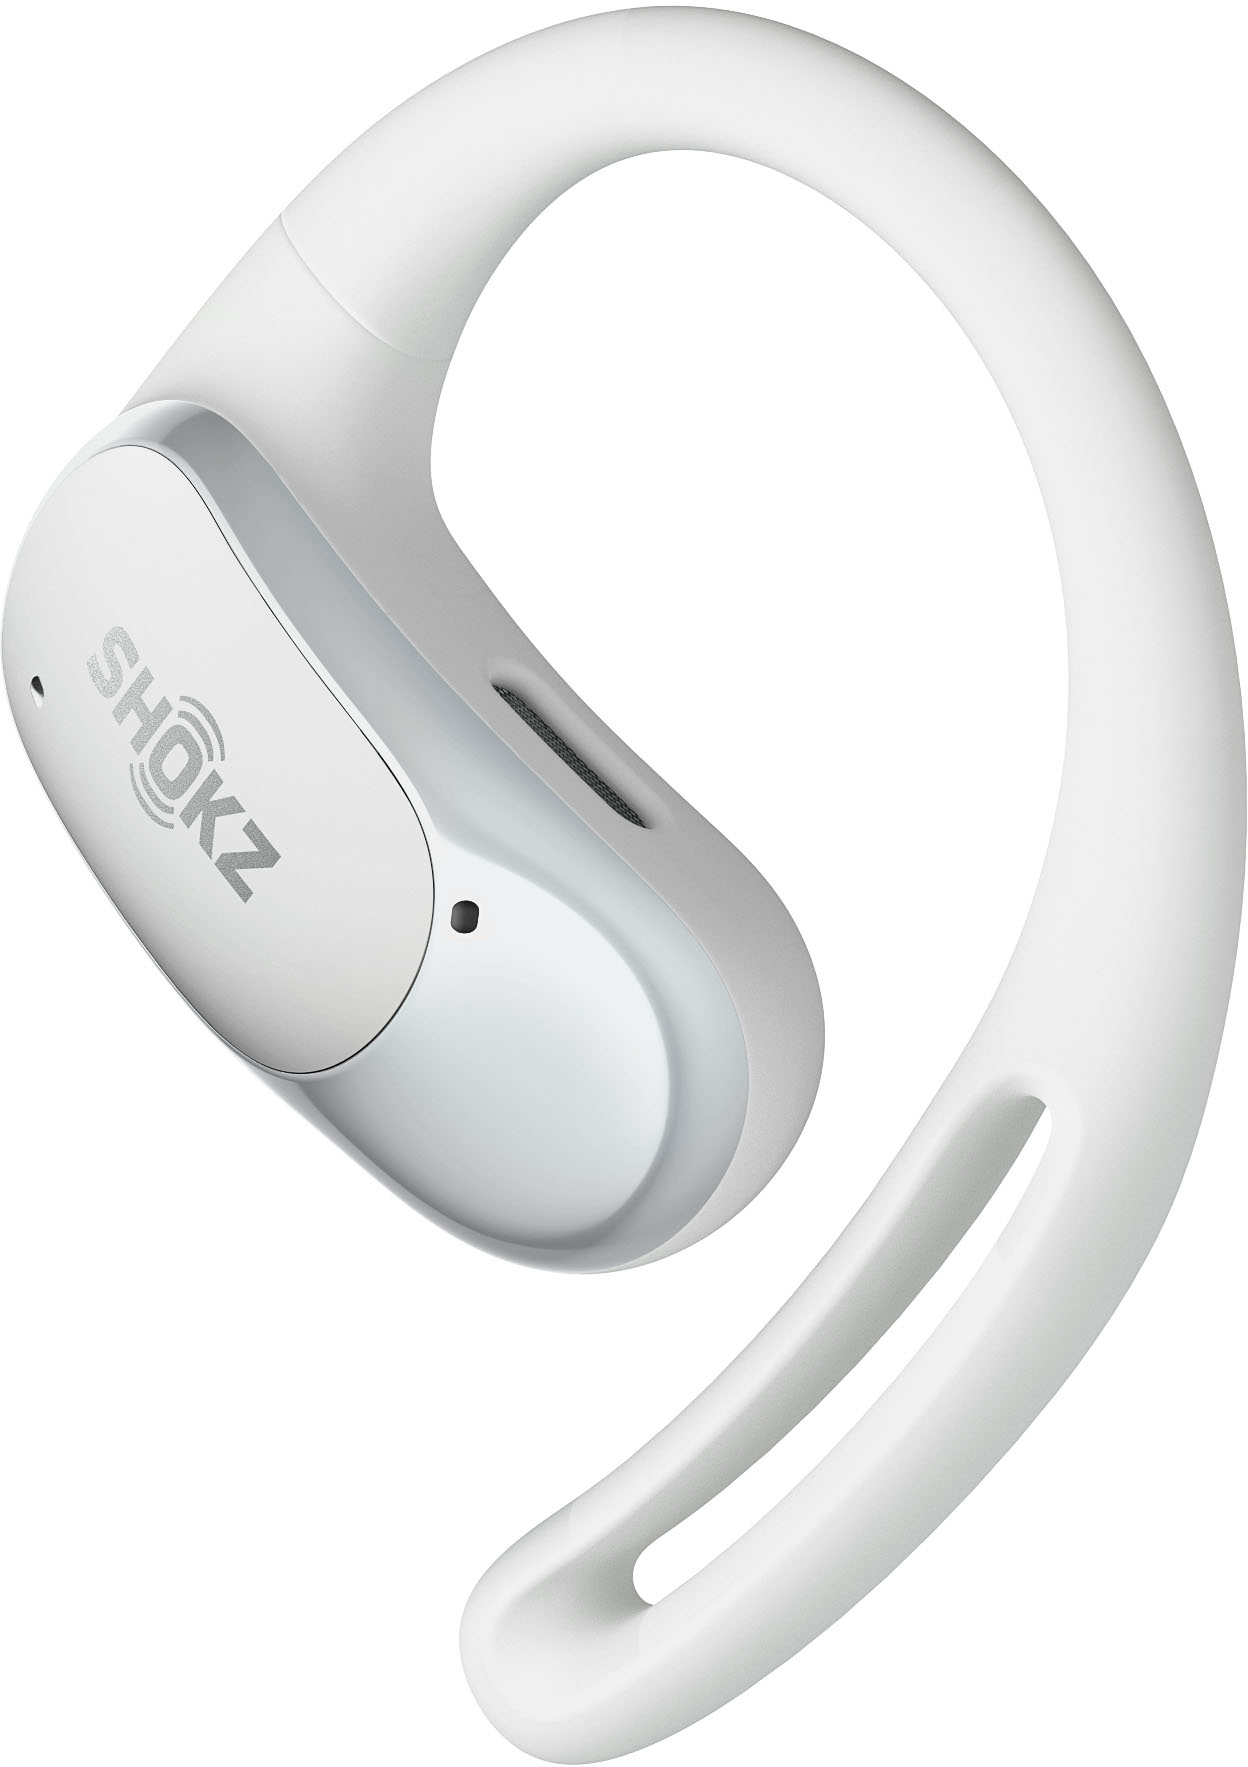 Shokz OpenFit Air Open-Ear True Wireless Earbuds White T511-ST-WT-US - Best  Buy